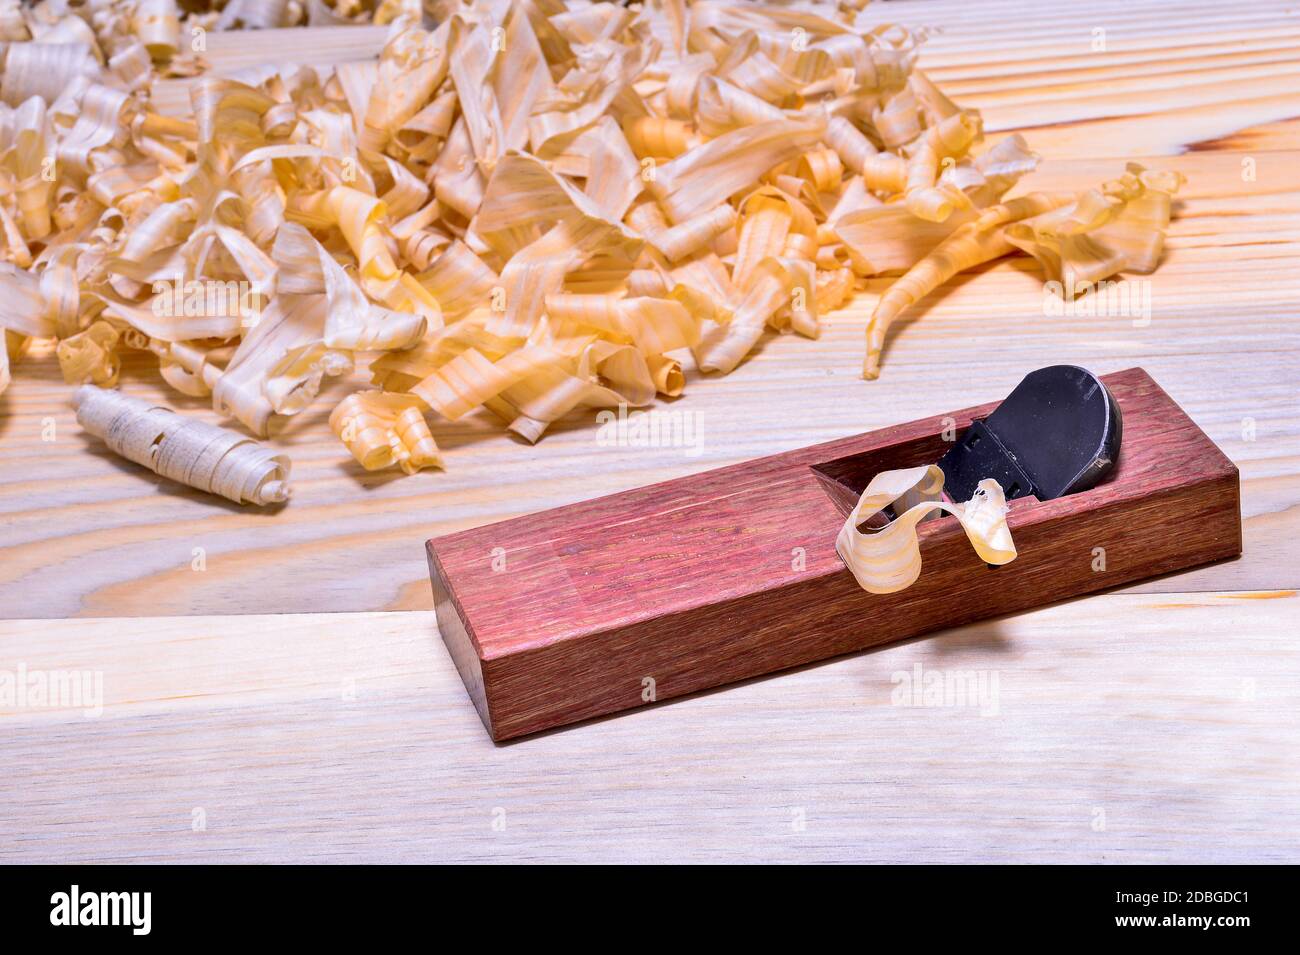 Plan japonais en bois de chêne rouge avec pile de copeaux sur une surface lisse en bois. Arrière-plan. Banque D'Images